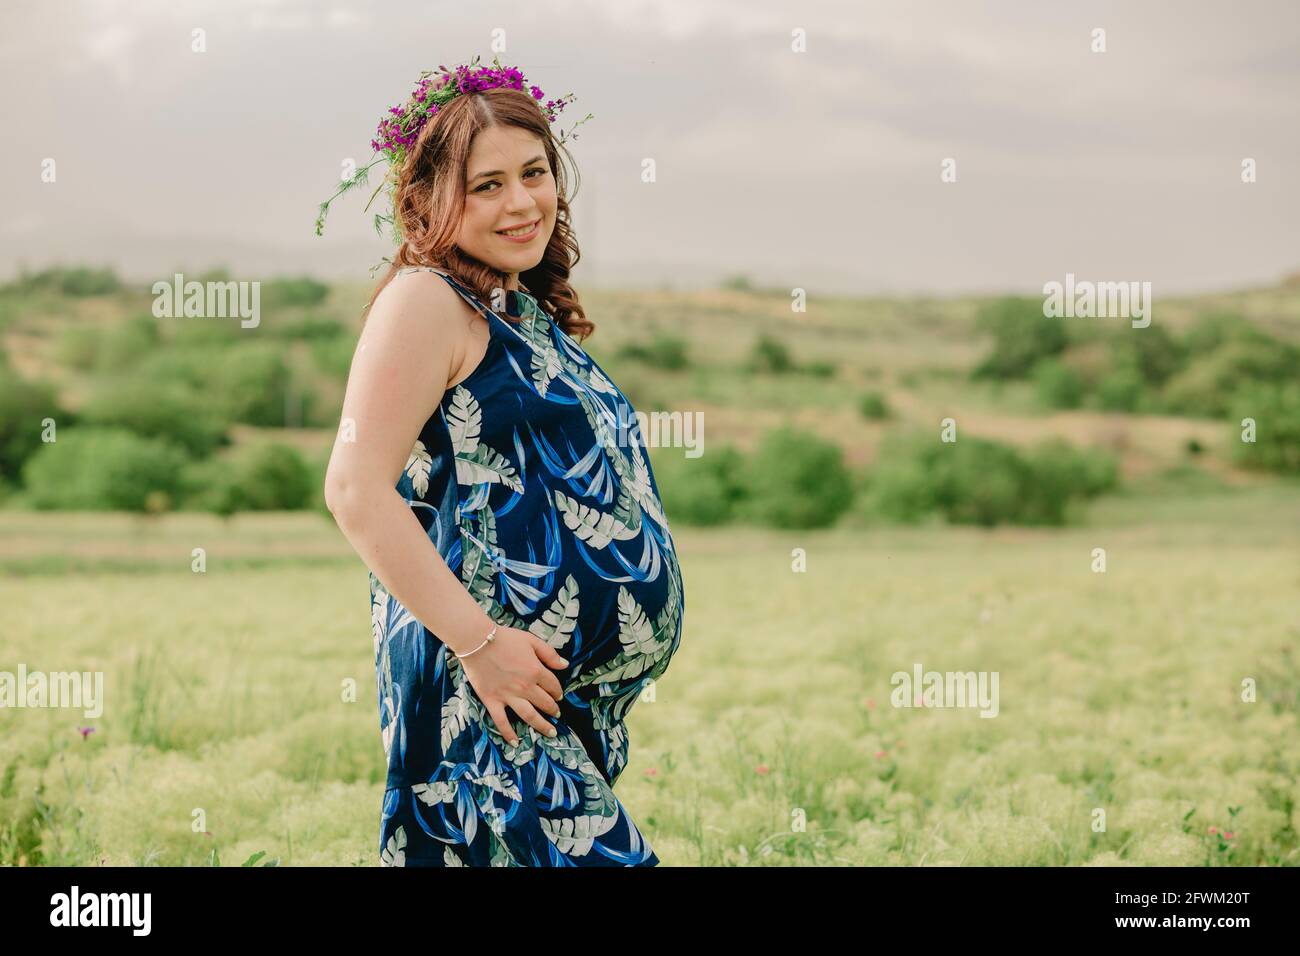 Schwangerschaft und Mutterschaft. Junge, schwanger Frau mit wilden Blumen auf dem Kopf, die auf dem Feld stehen, ihren großen Bauch halten und für die Kamera posieren Stockfoto